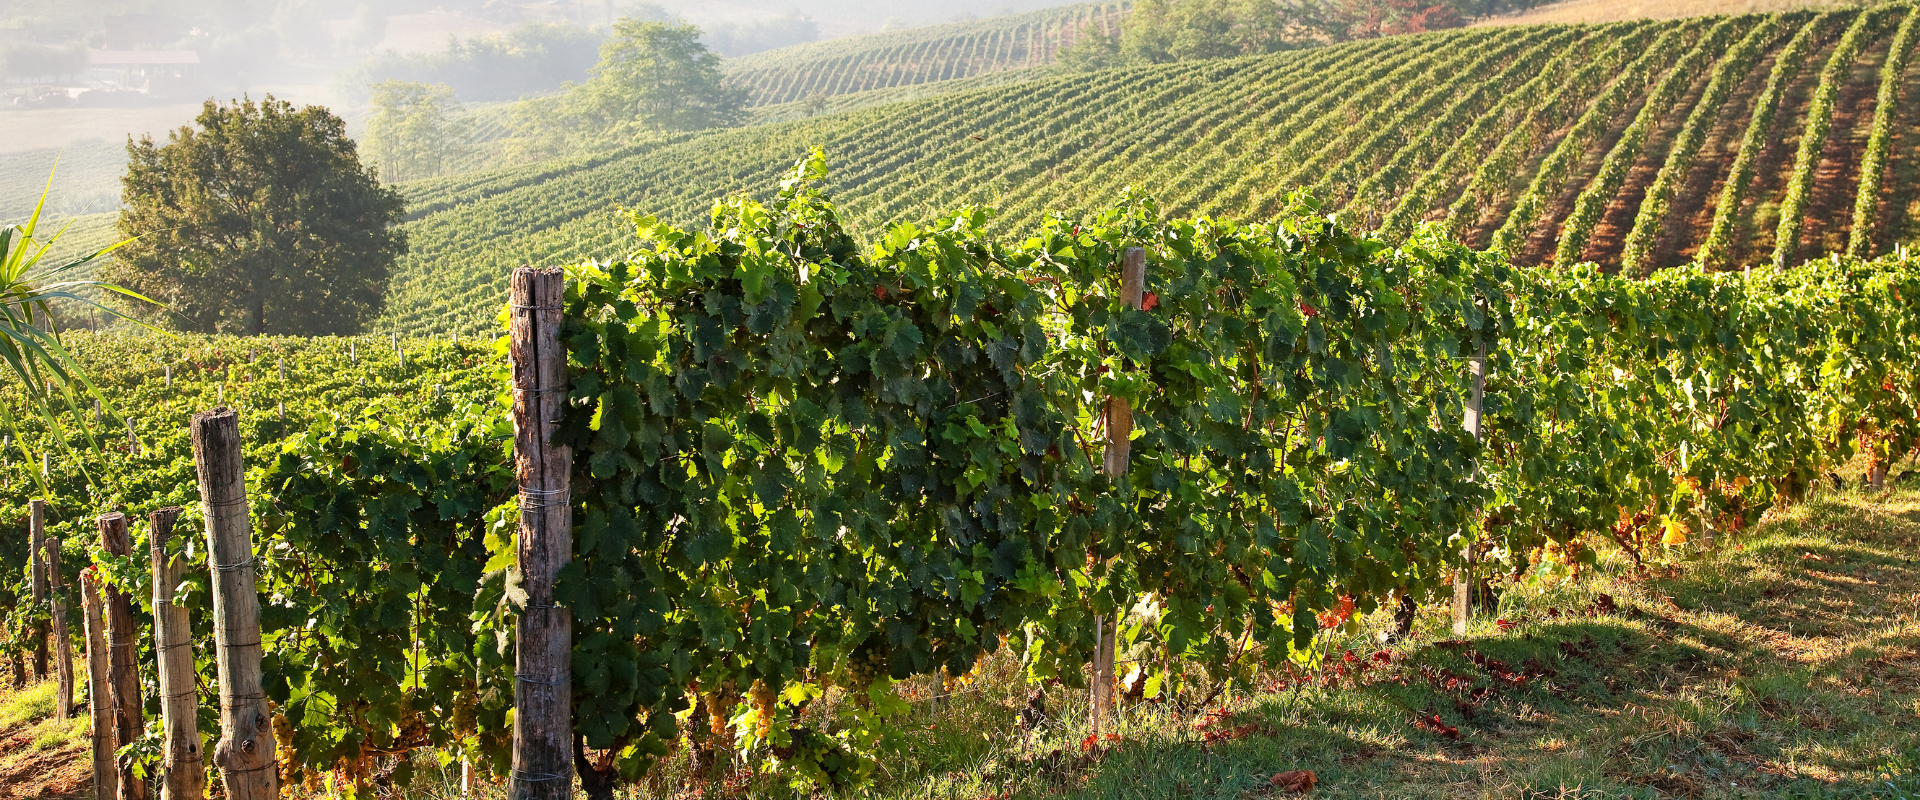 vigne Monferrato